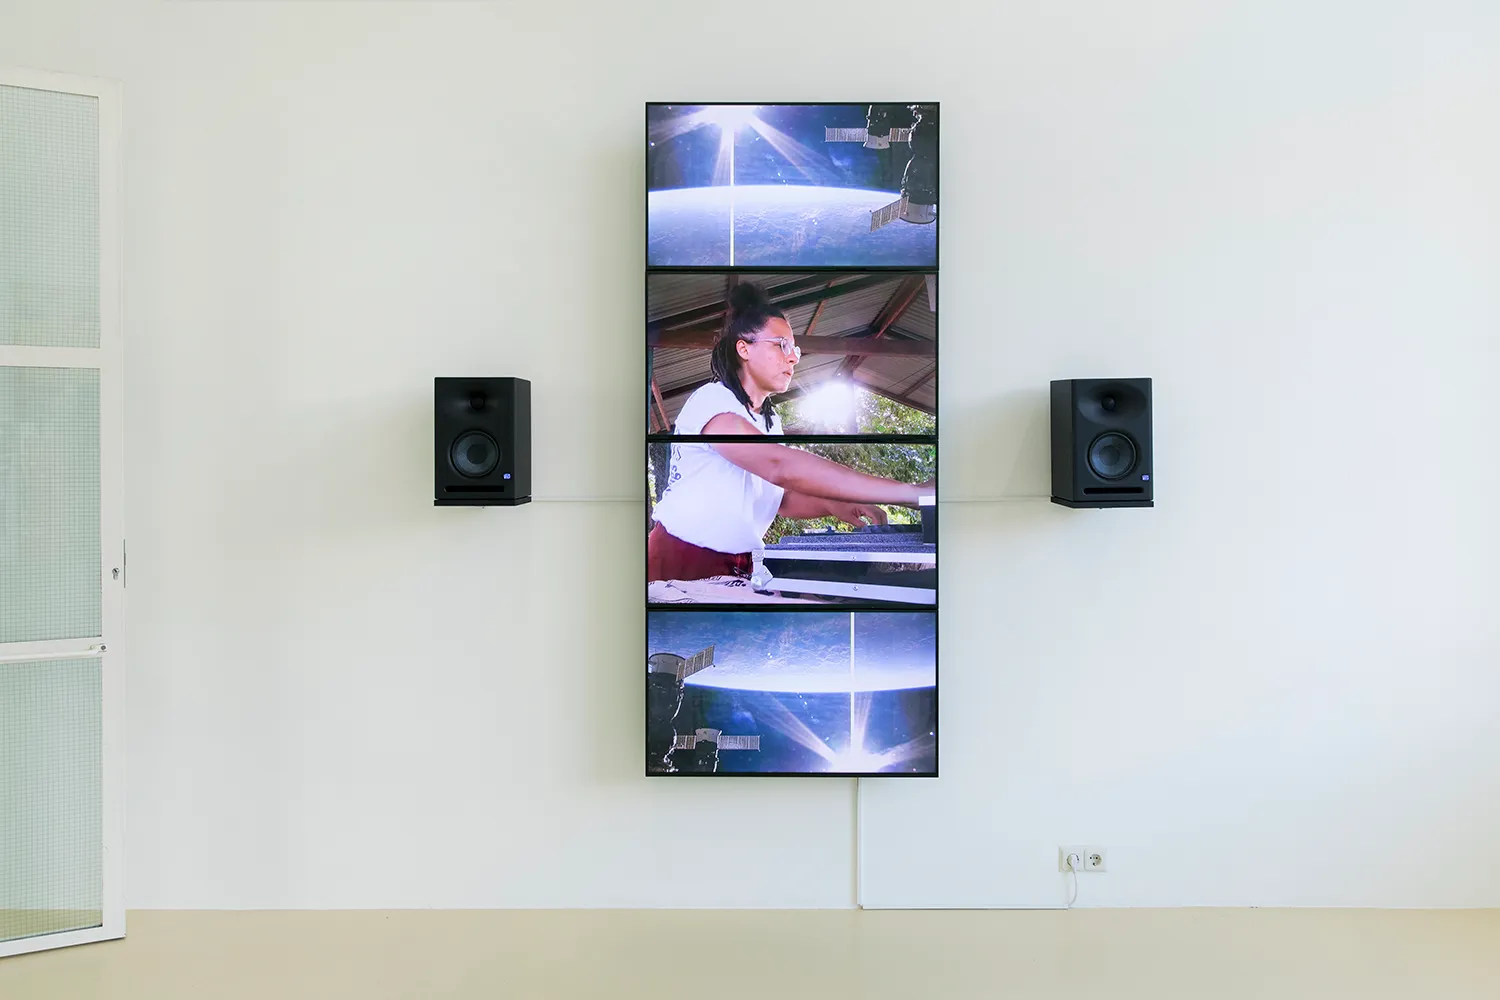 4 flatscreens die een verticale streep vormen op de muur met 2 speakers. Een DJ is aan het mixen in het midden van de schermen, omringd door satellietbeelden van een planeet